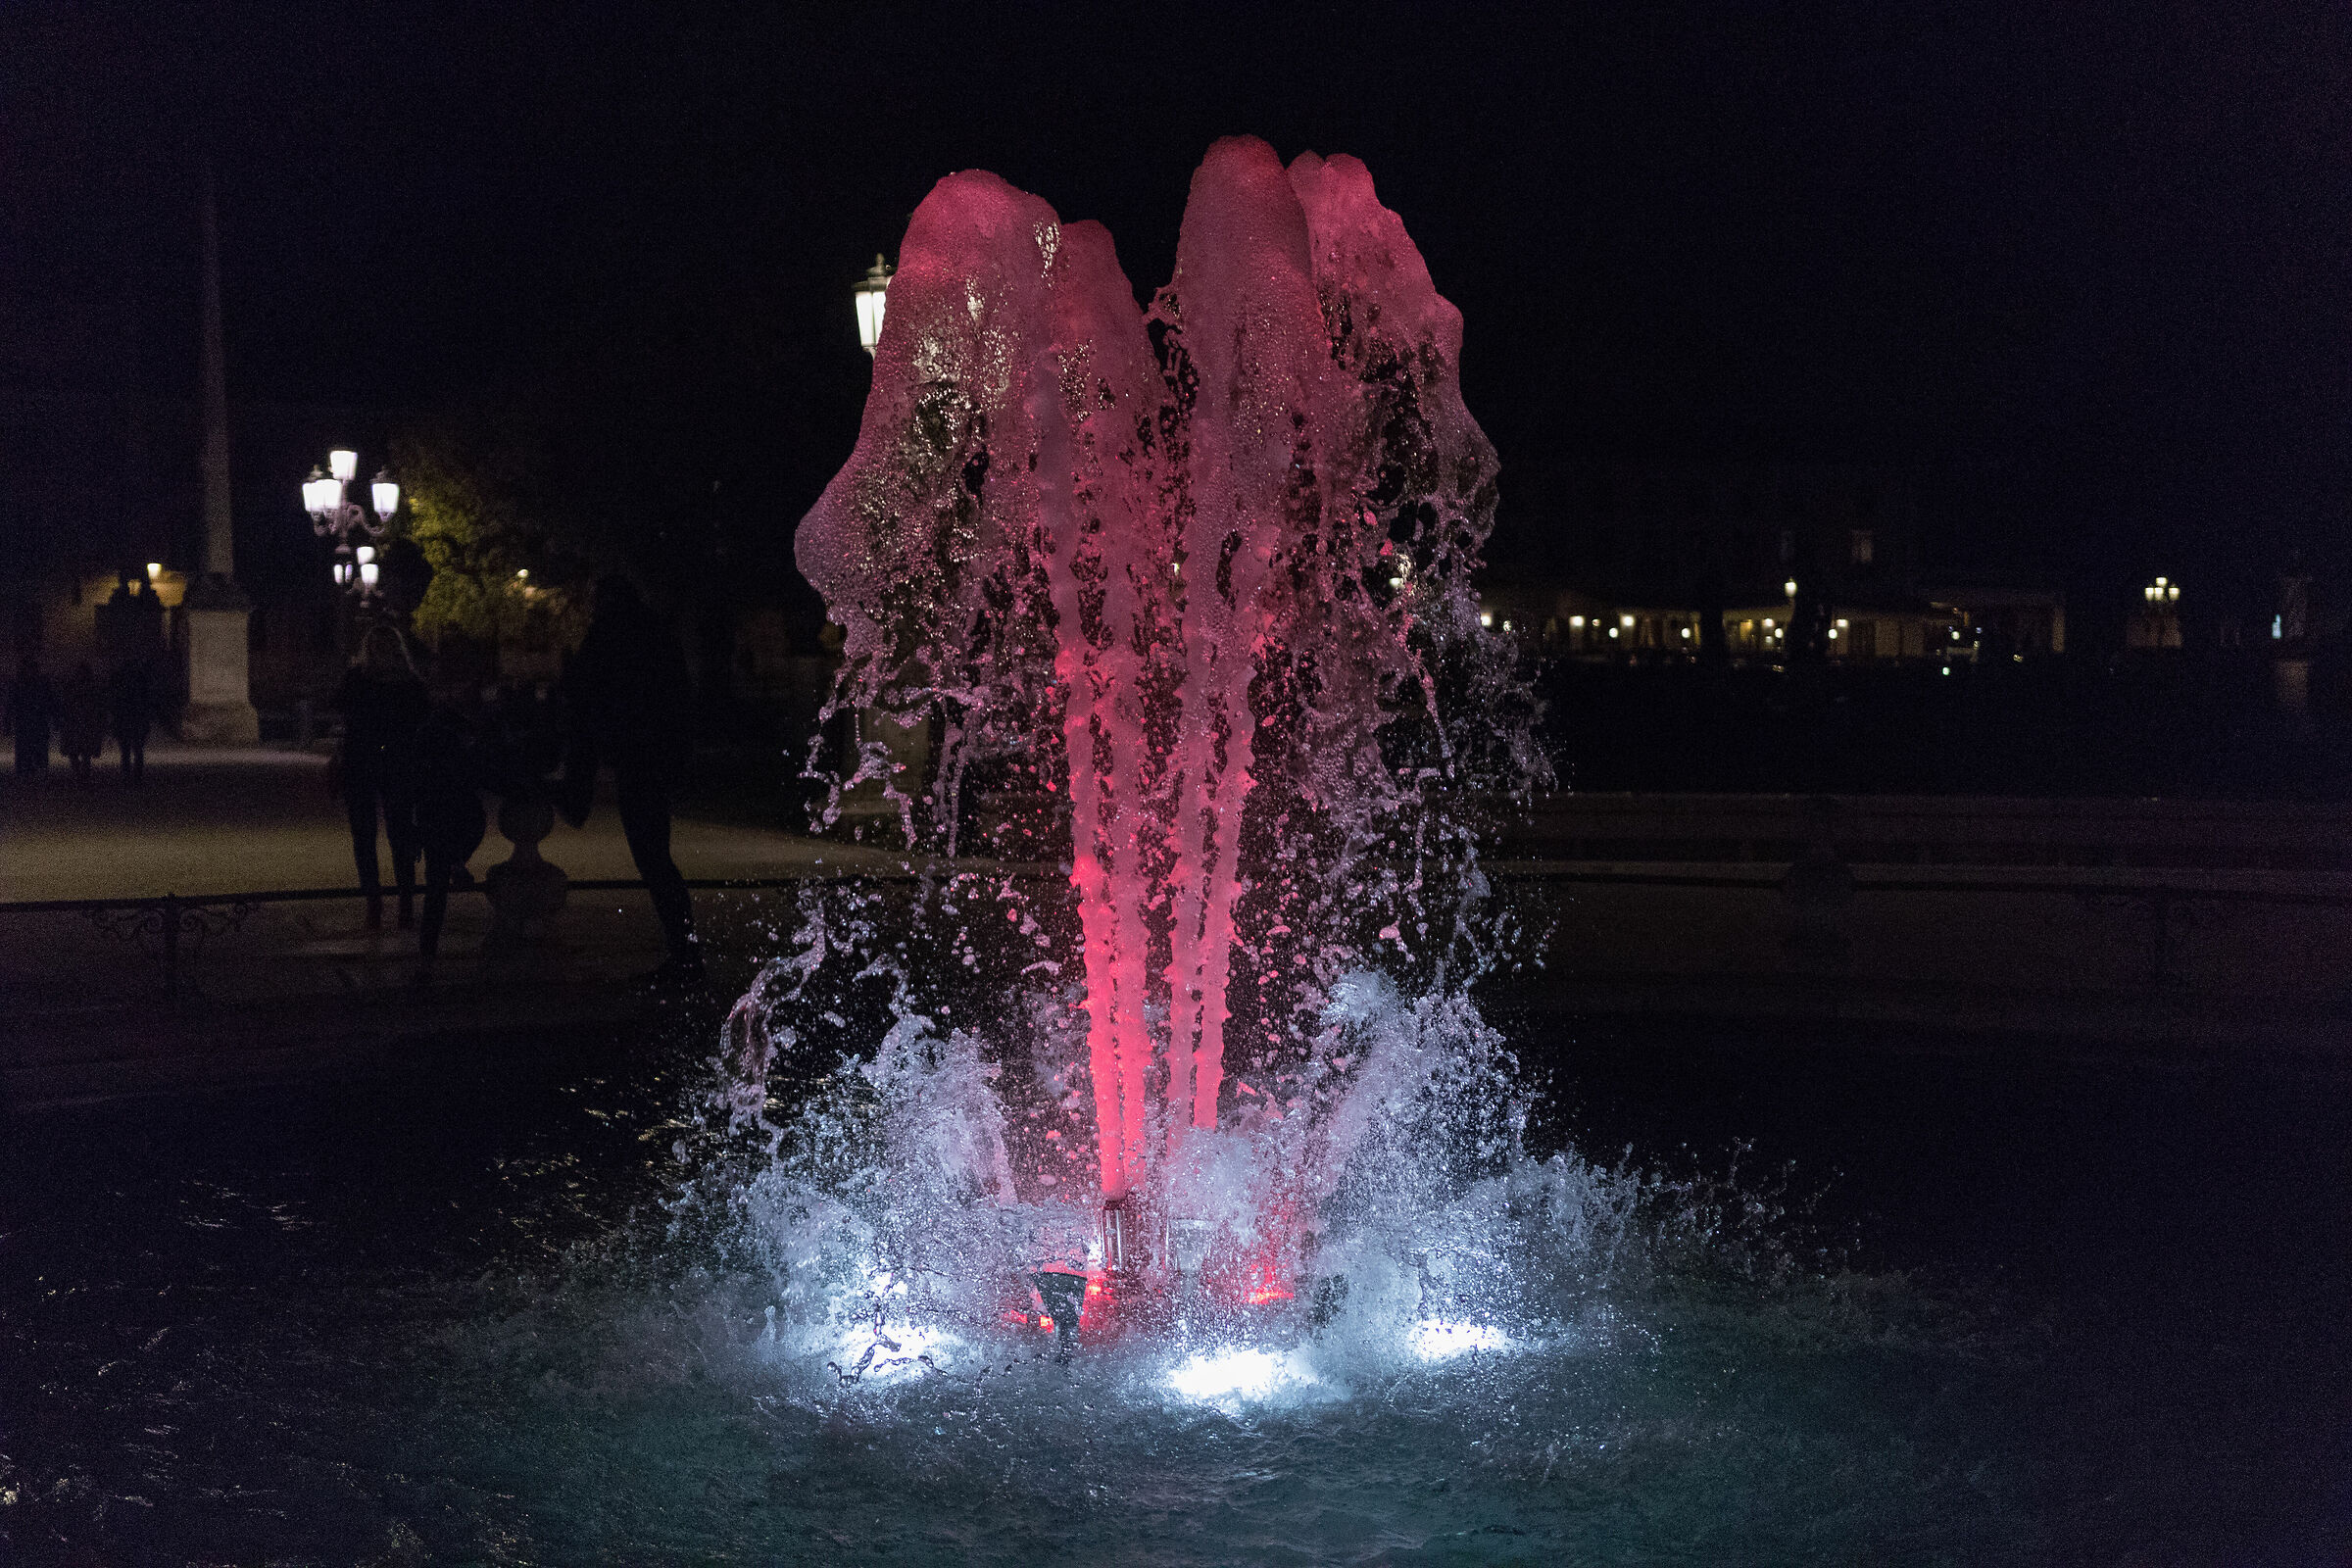 Fountain in Prato Della Valle...